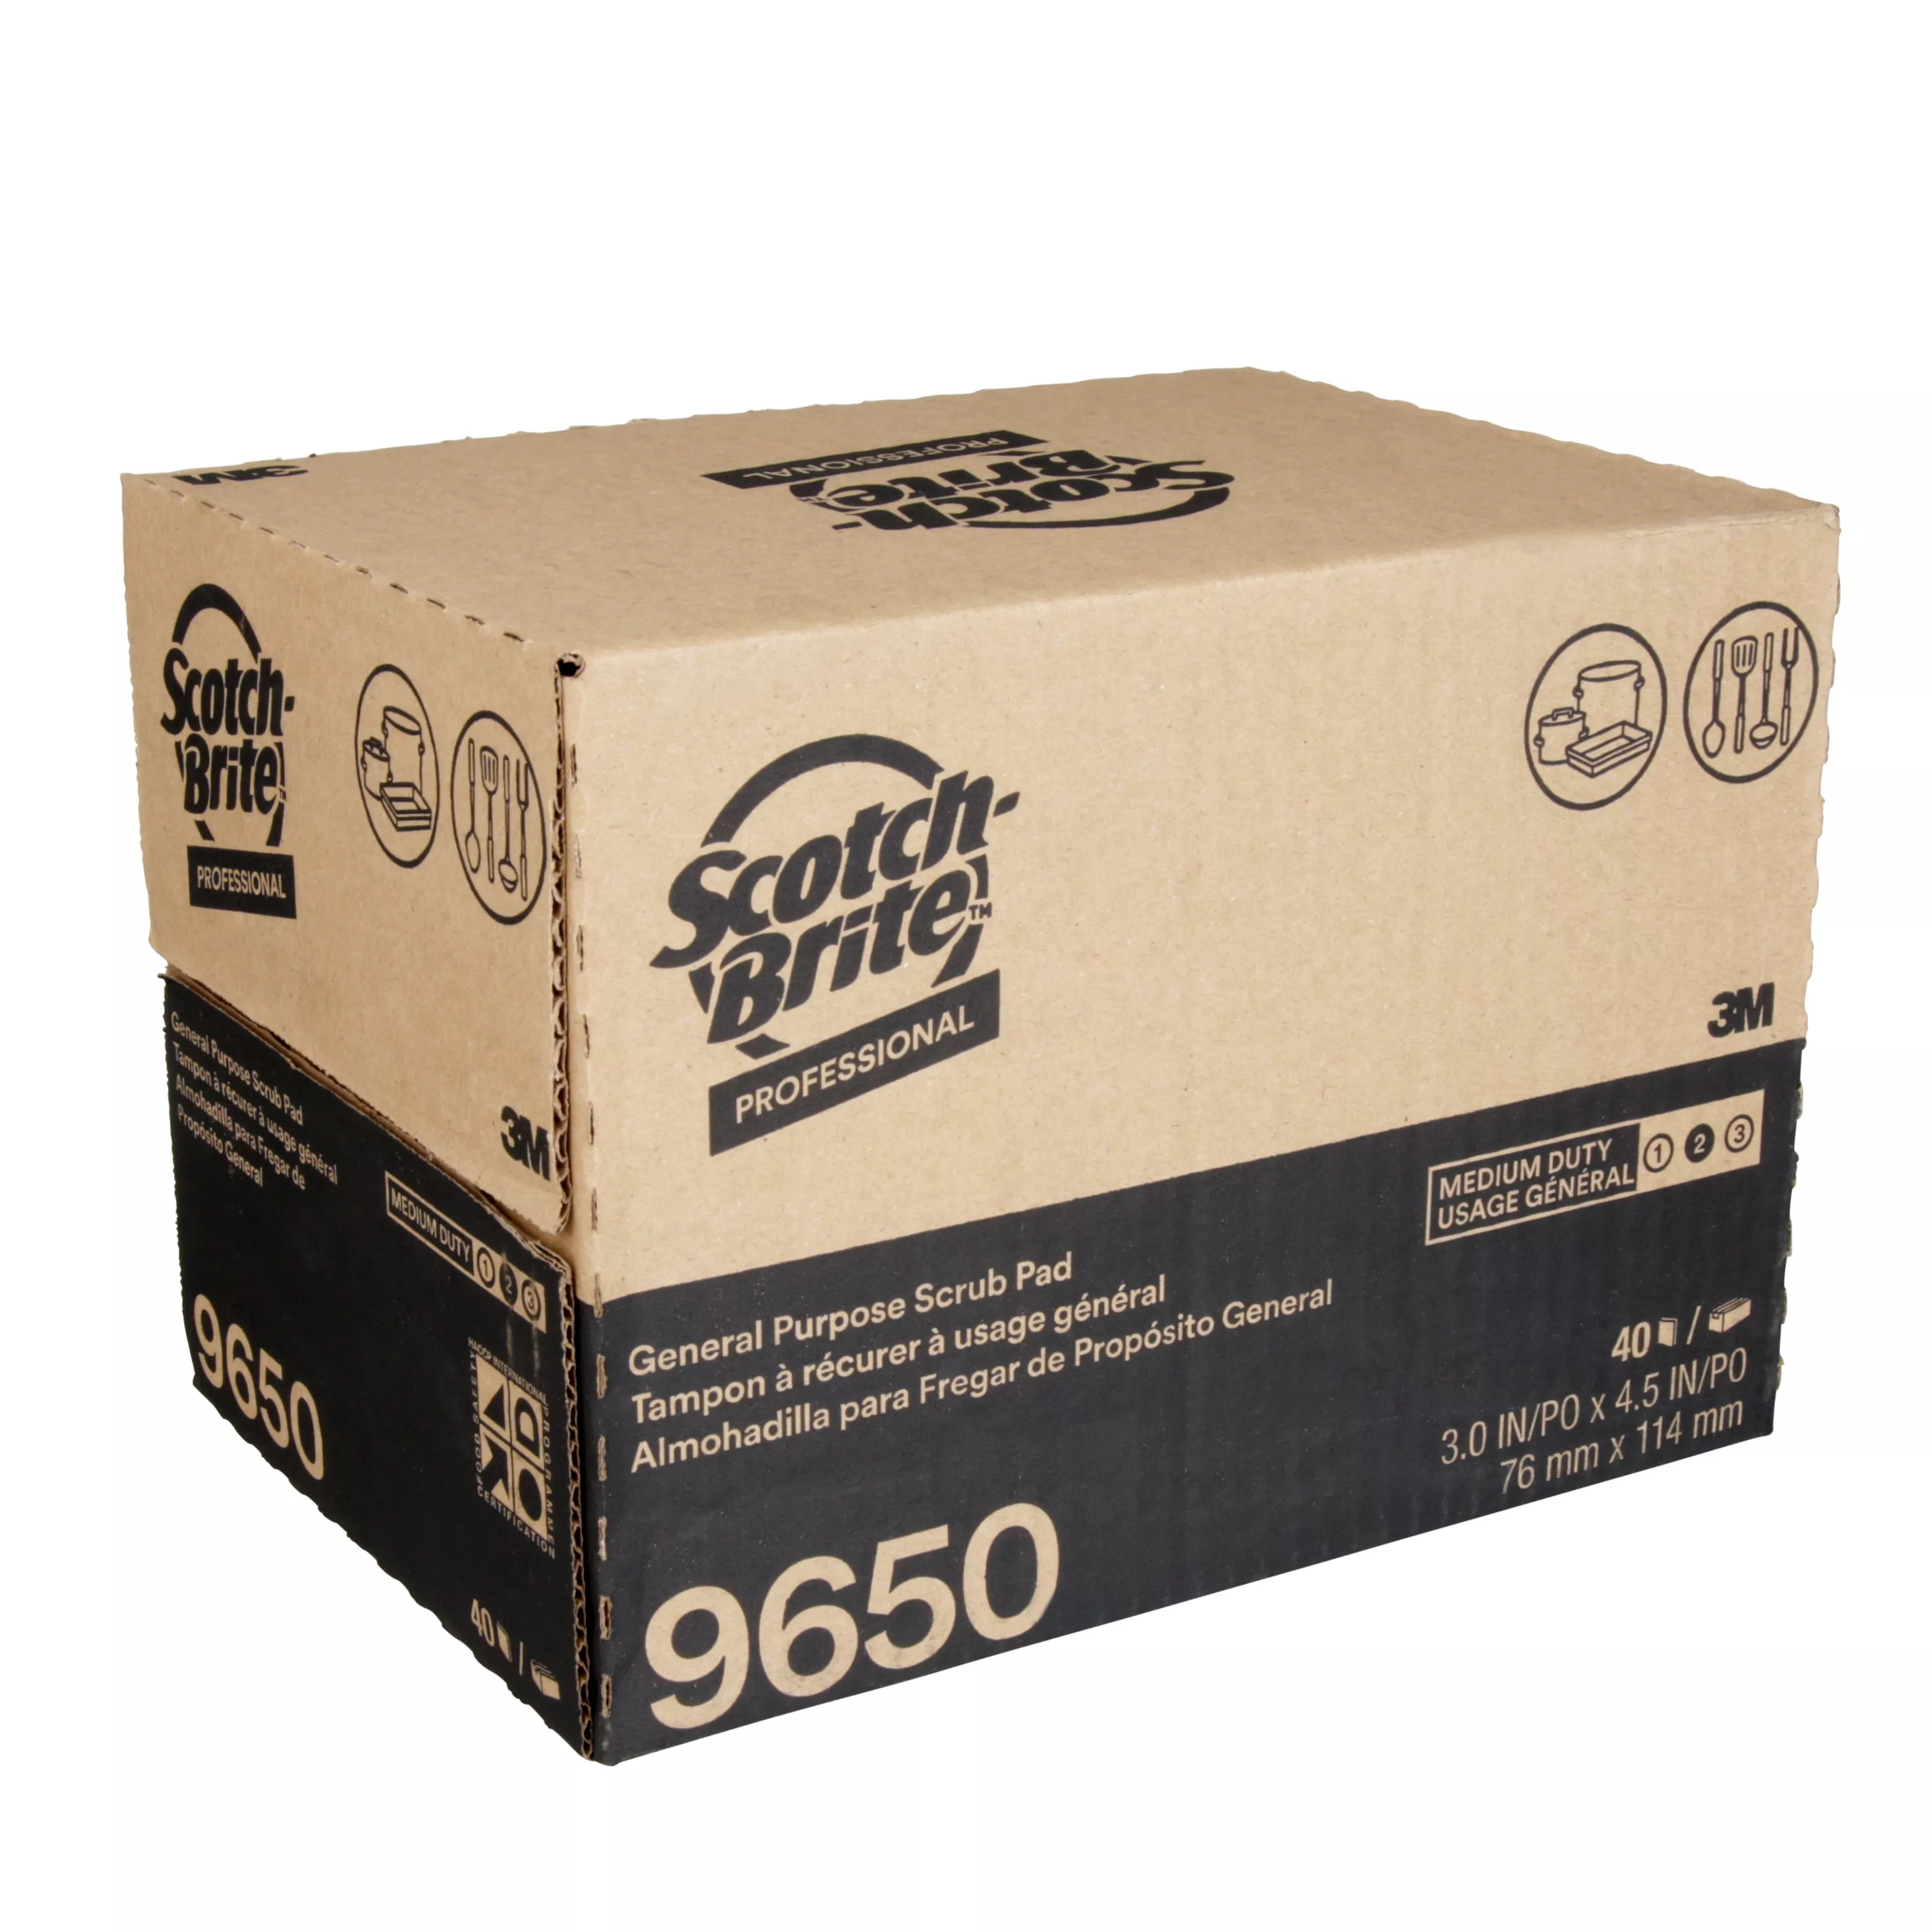 SKU 7000052522 | Scotch-Brite™ General Purpose Scrub Pad 9650